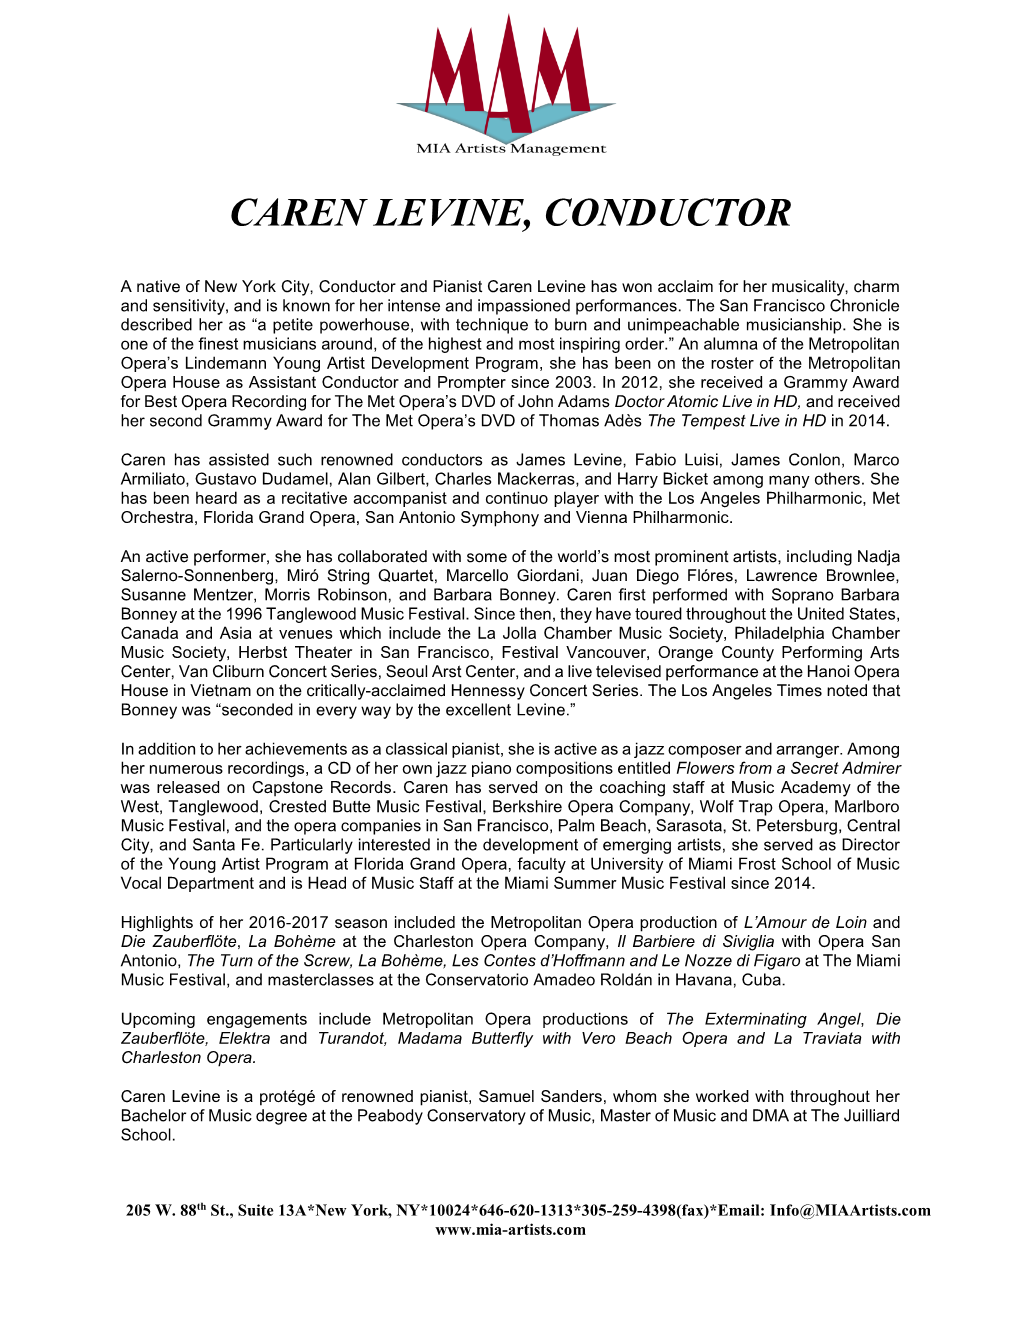 Caren Levine, Conductor